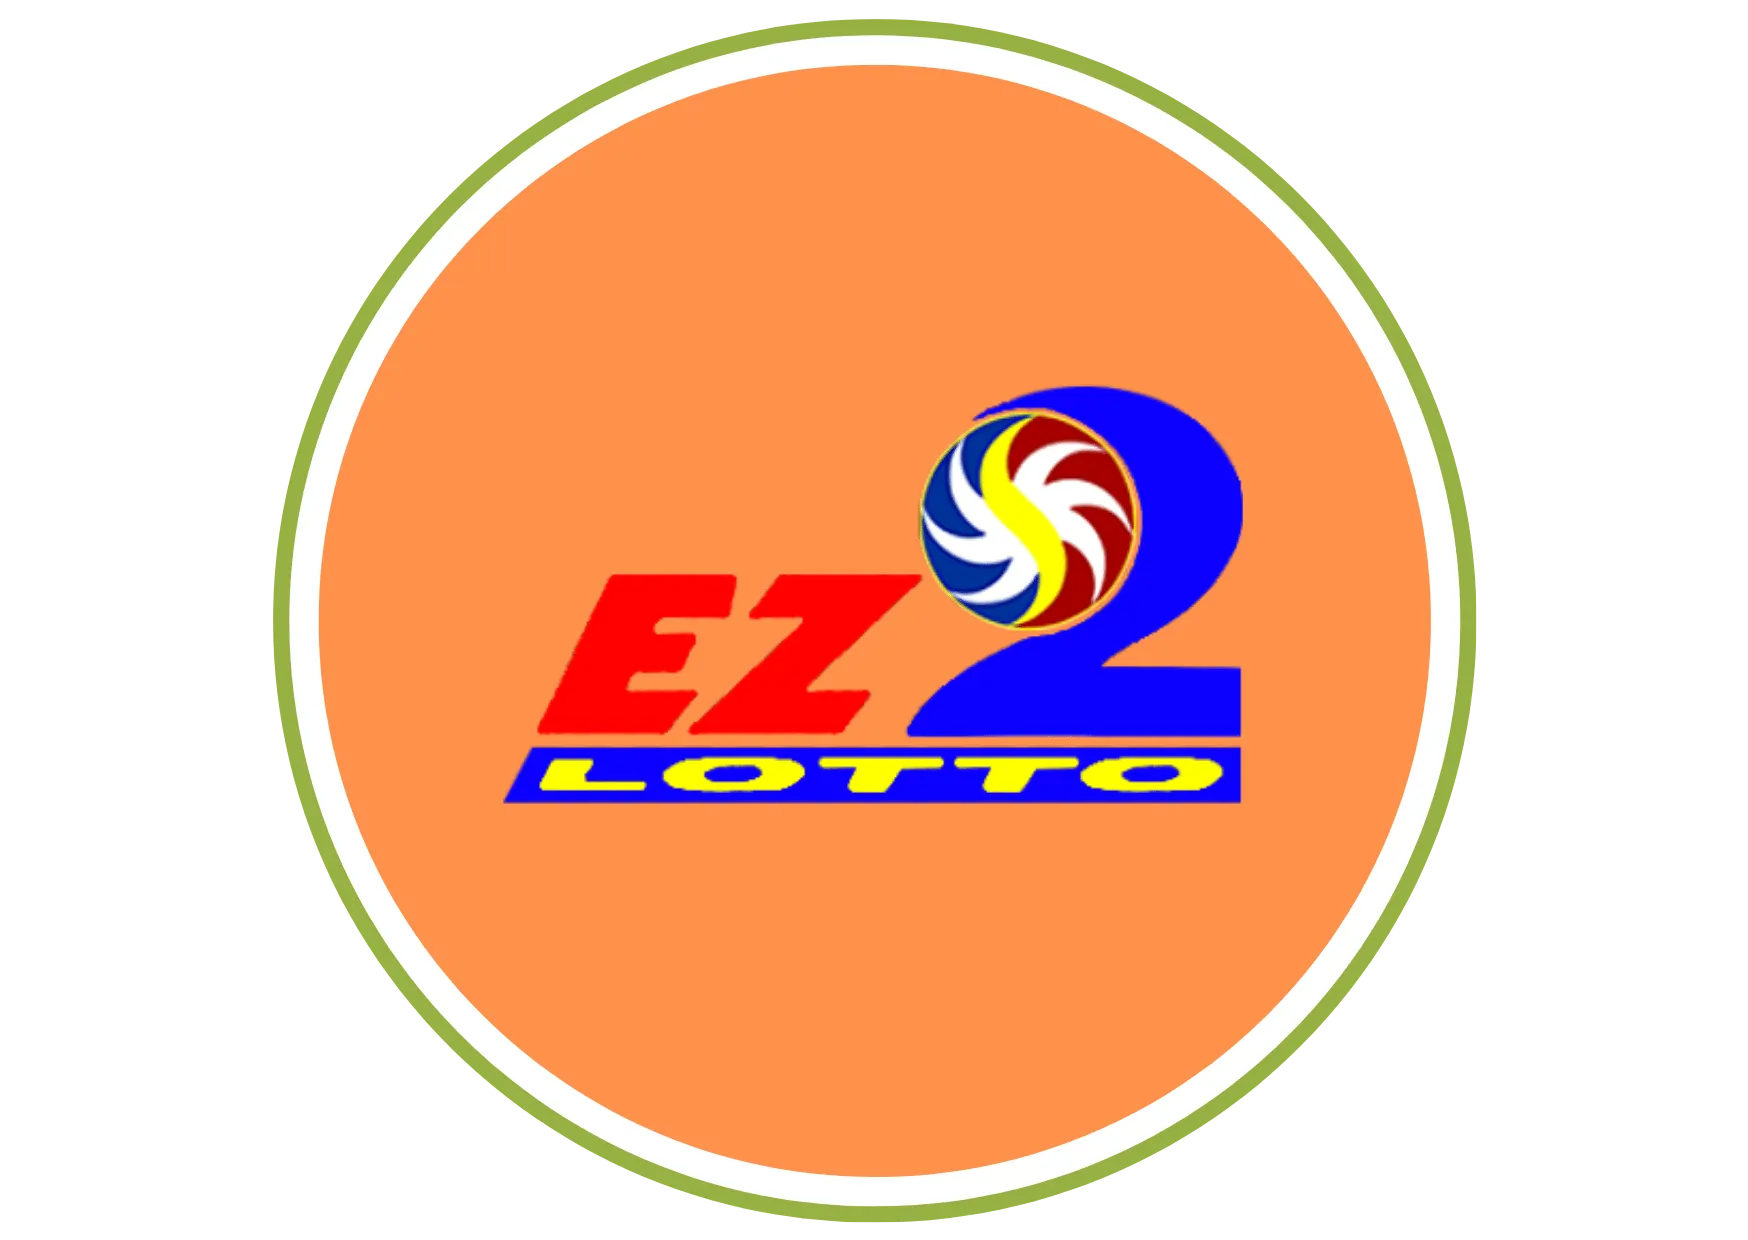 Paano Maglaro ng EZ2 Lotto